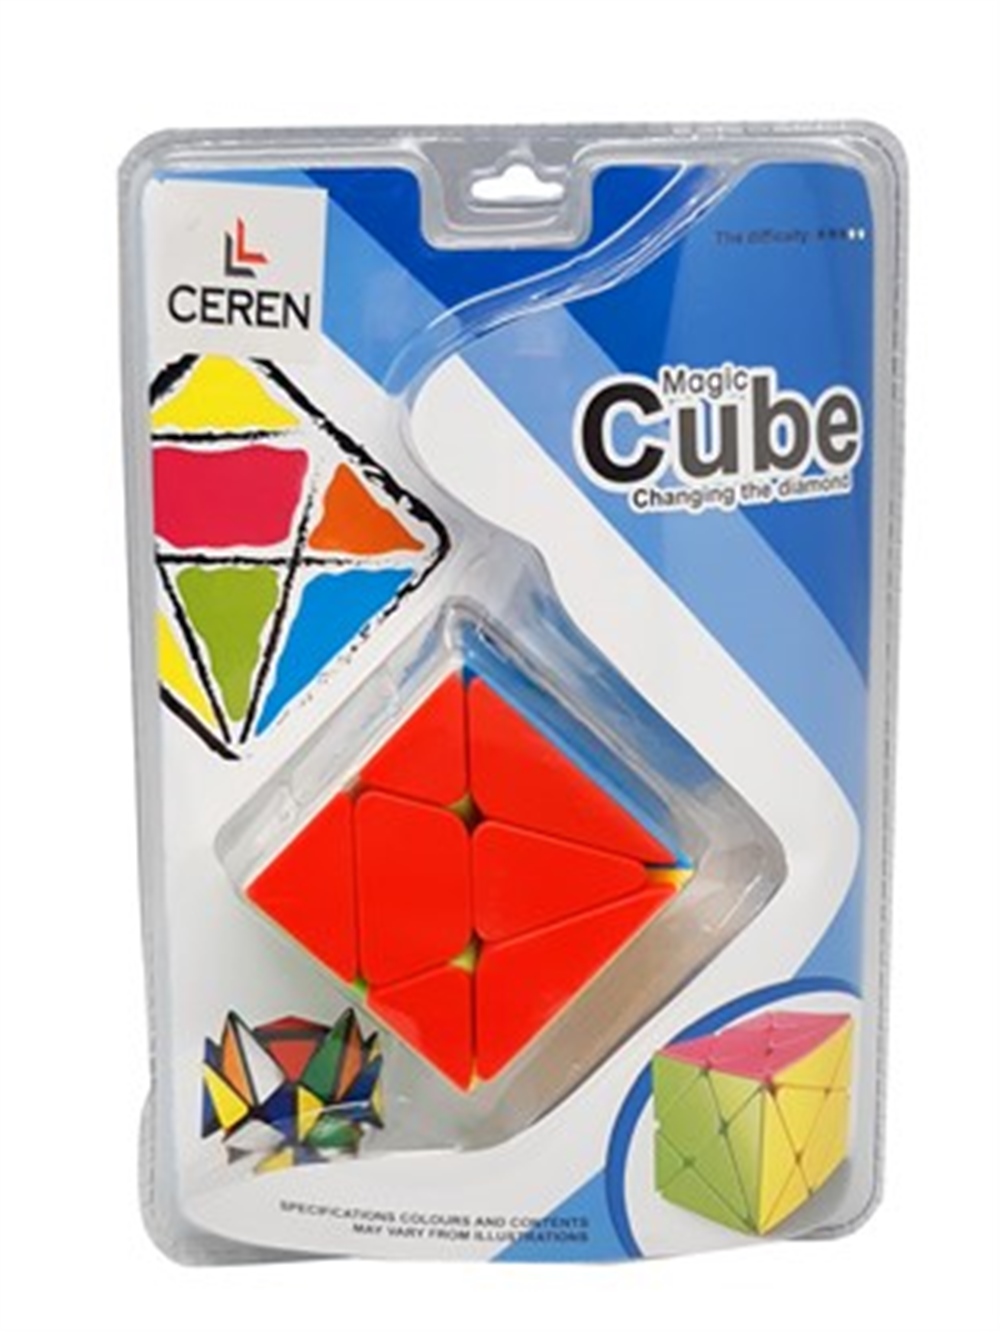 Geometrik Şekilli Rubik Küp, Alışverişin Adresi'nde | Shopiglo